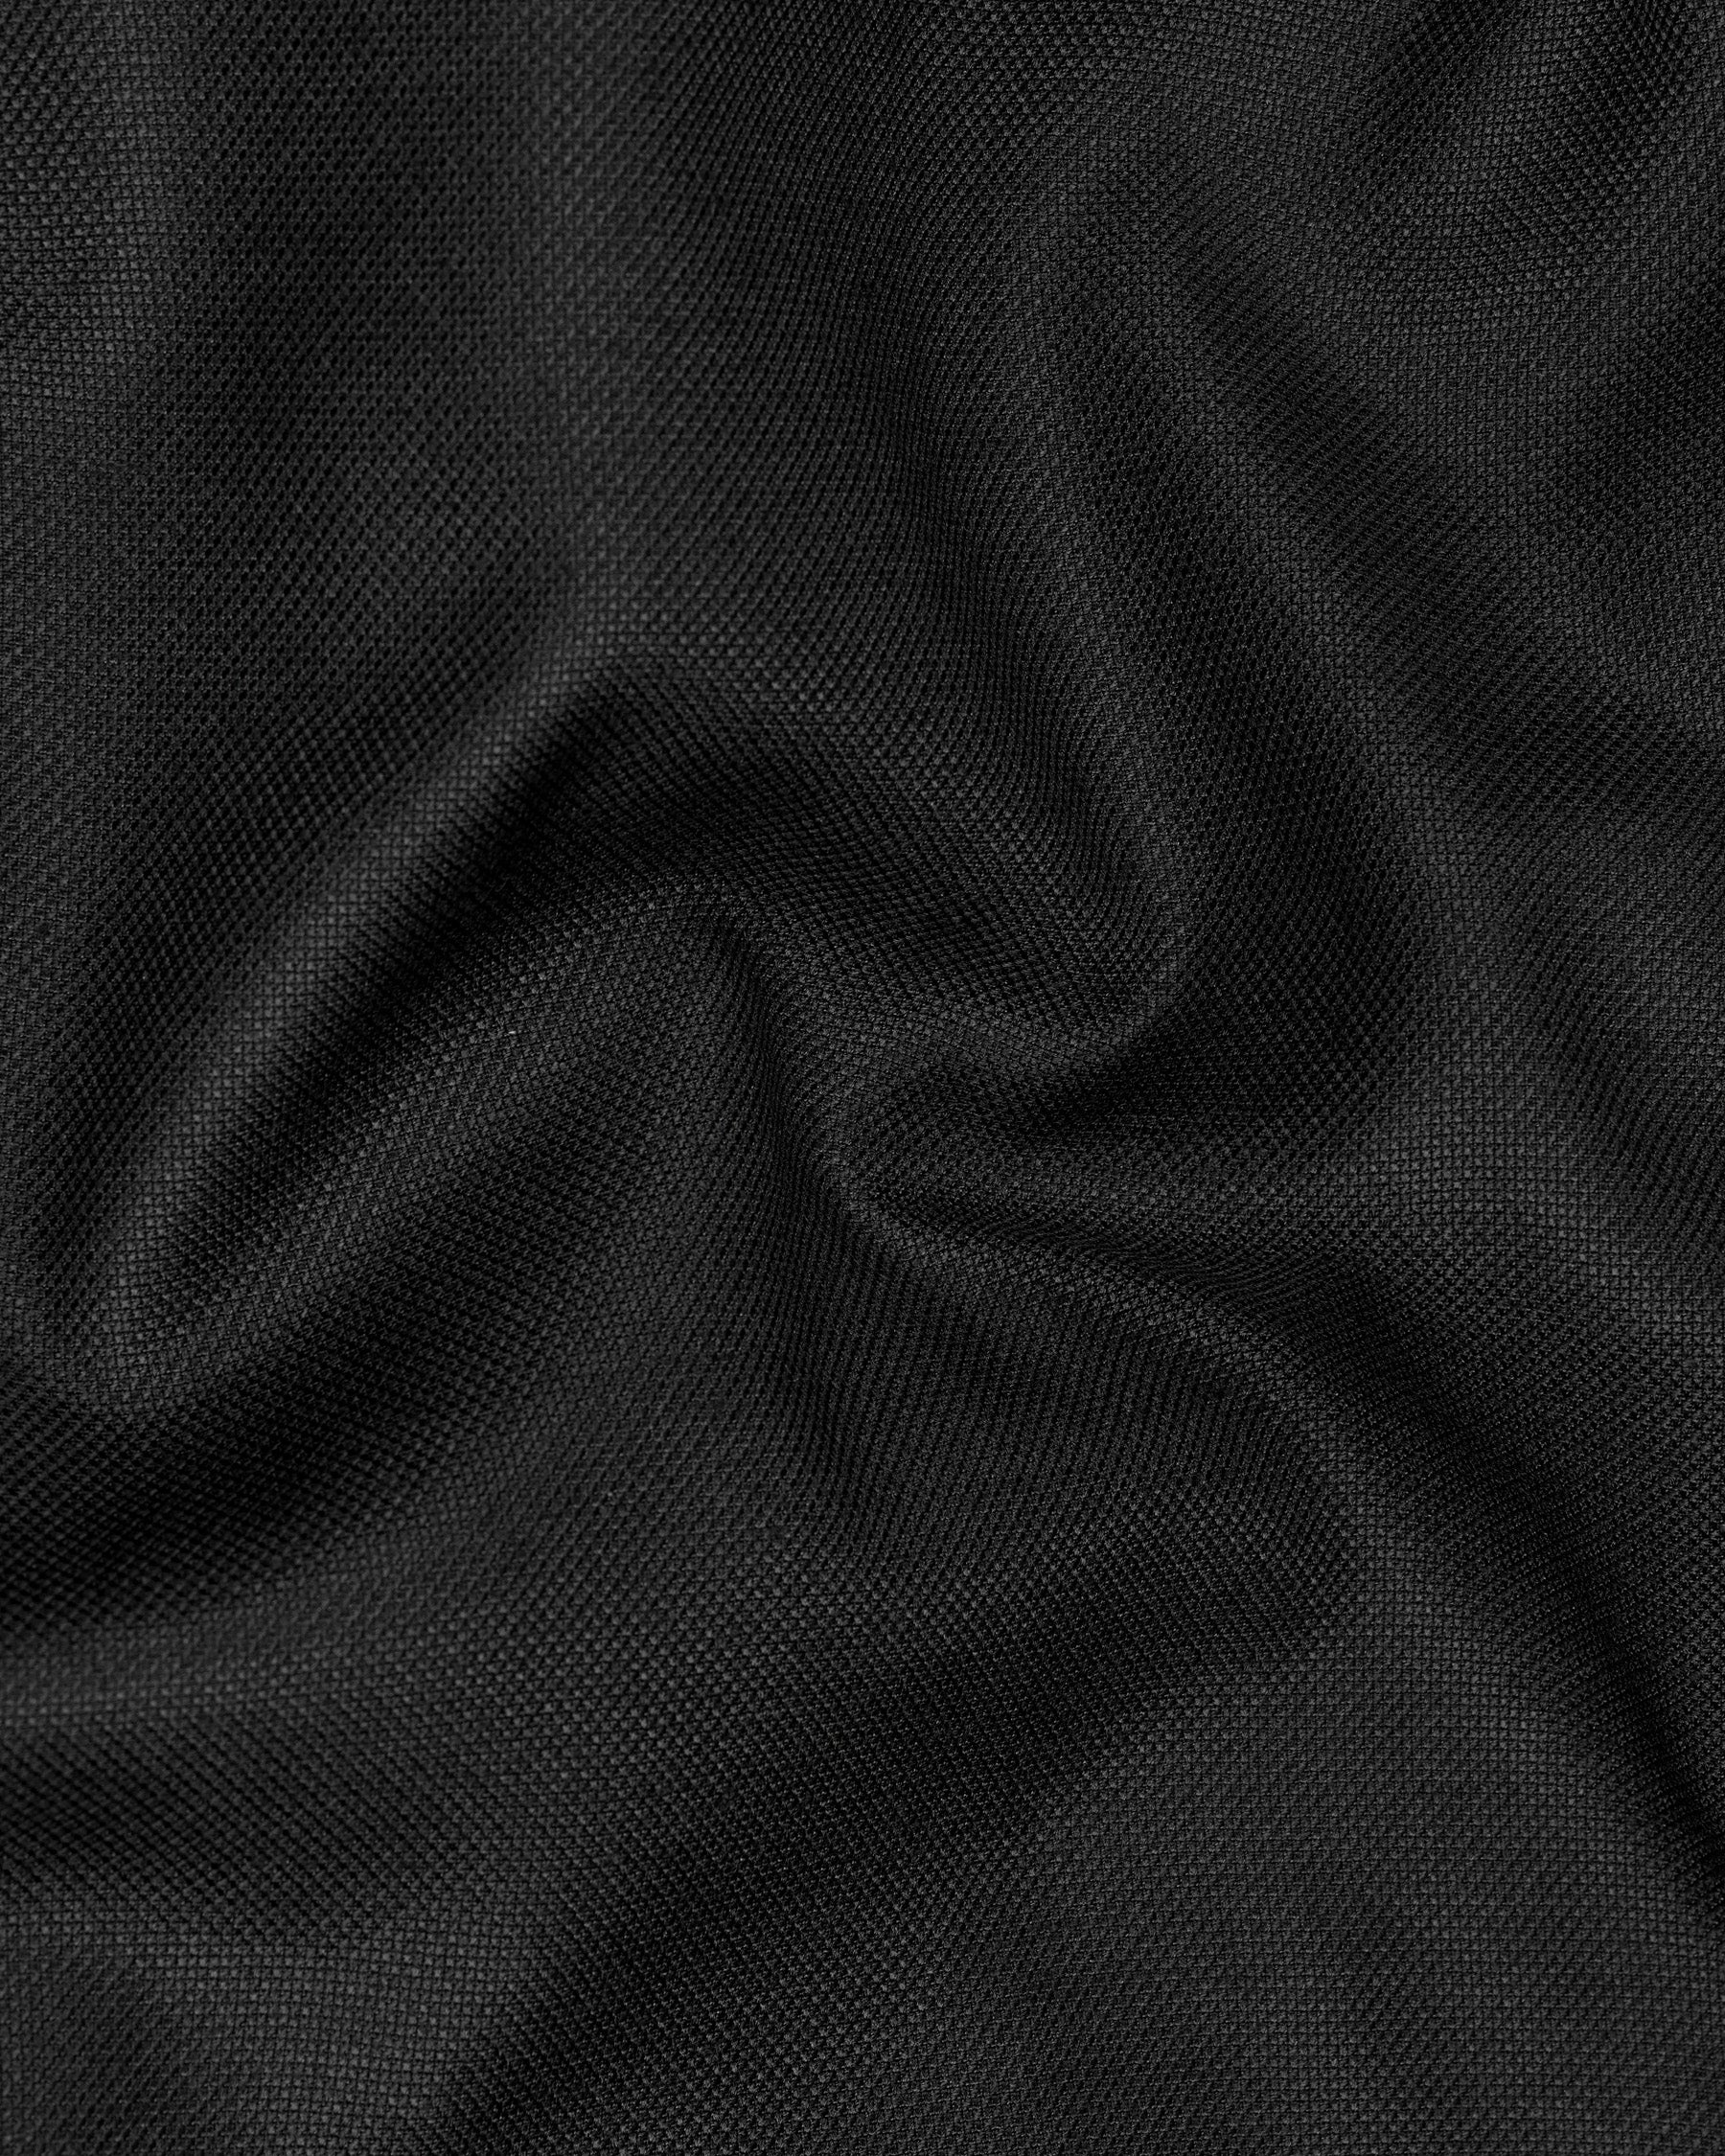 Jade Black Textured Pant T2011-28, T2011-30, T2011-32, T2011-34, T2011-36, T2011-38, T2011-40, T2011-42, T2011-44